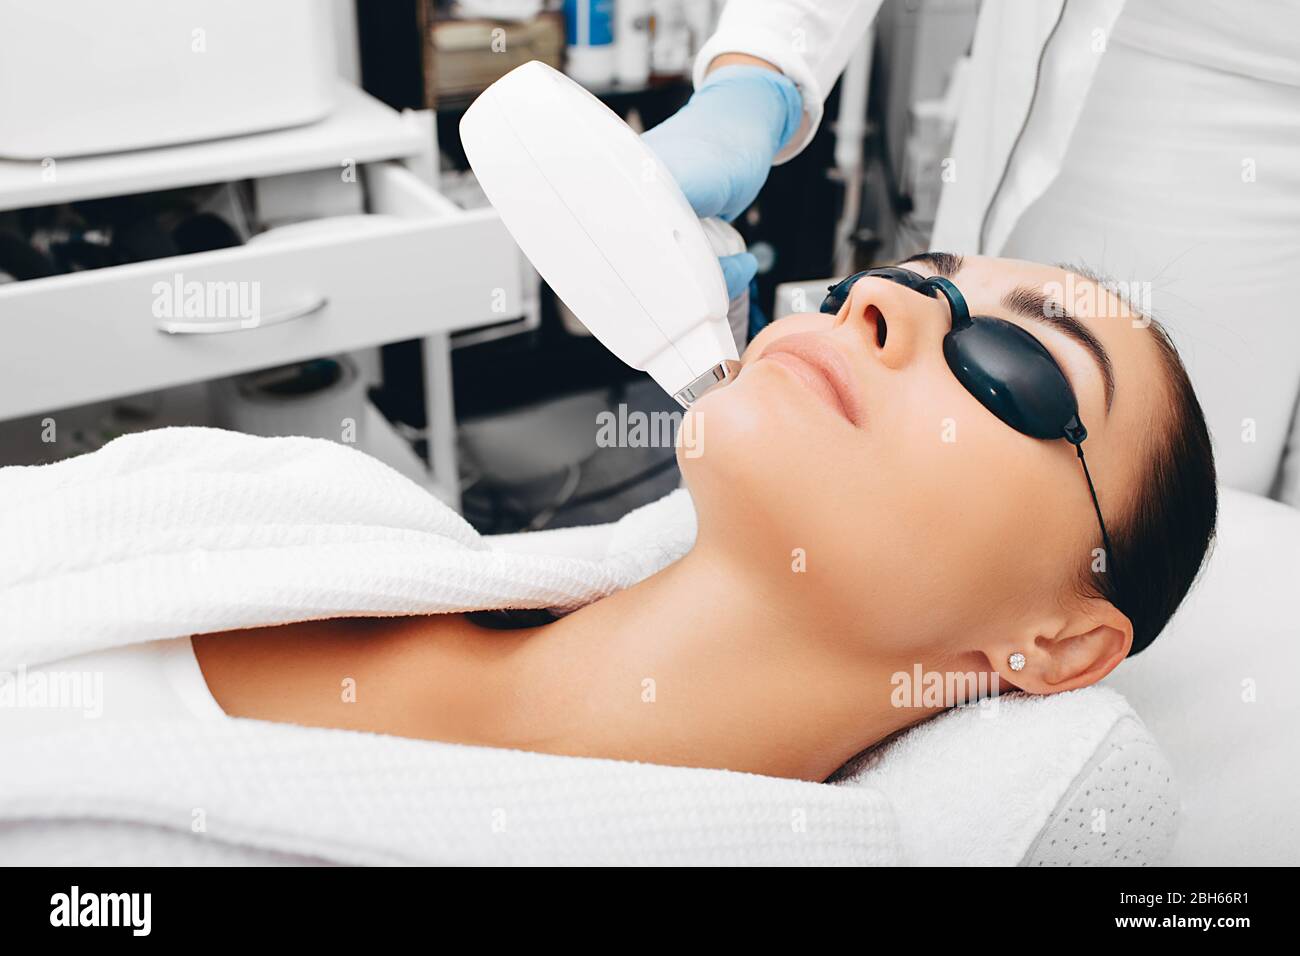 Kosmetikerin entfernt Gesichtshaar einer Brünette mit einem medizinischen  Laser. Laser-Haarentfernung. Nahaufnahme des Gesichts Stockfotografie -  Alamy